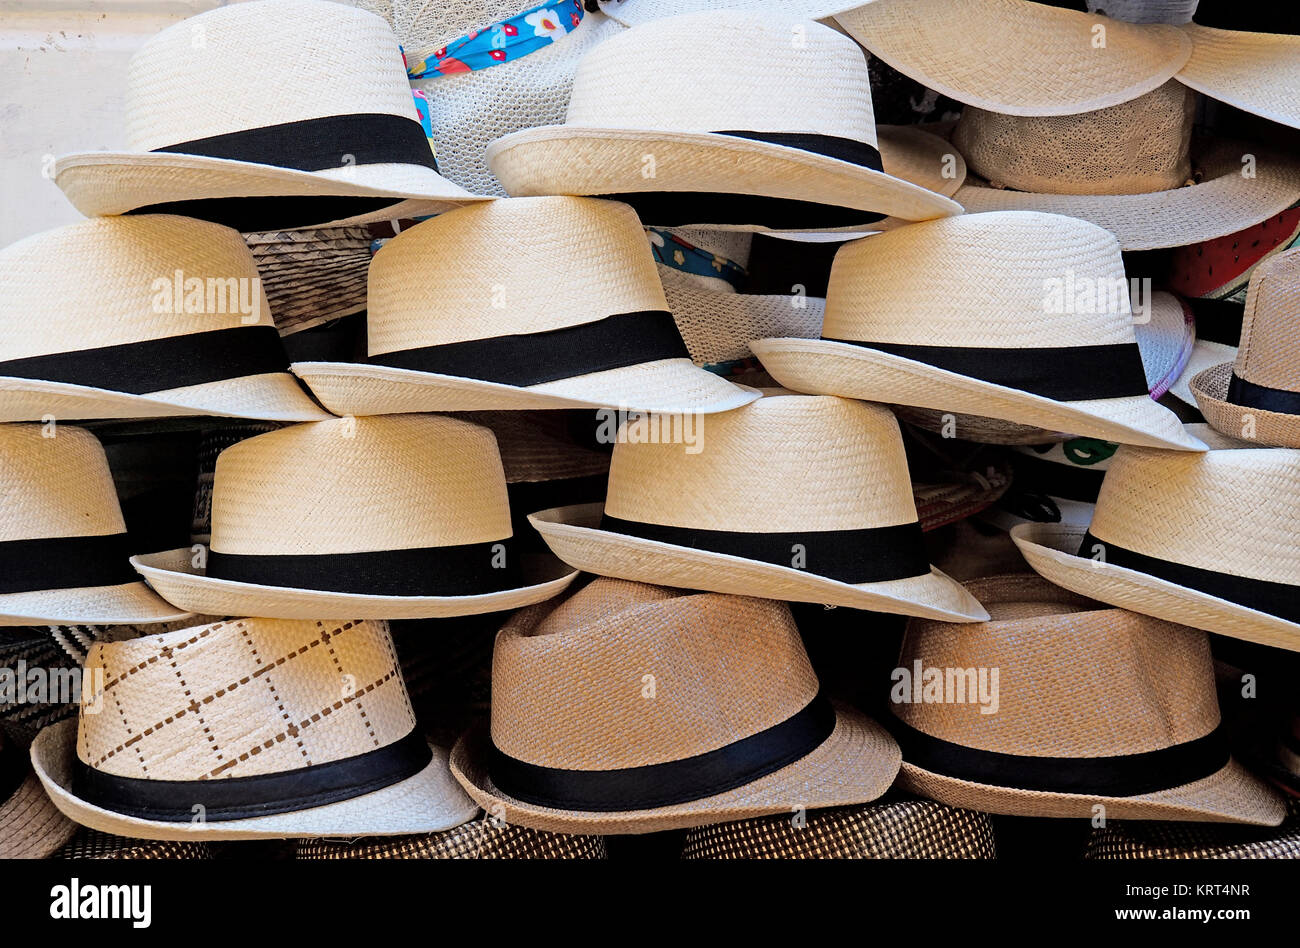 Cappelli di panama immagini e fotografie stock ad alta risoluzione - Alamy